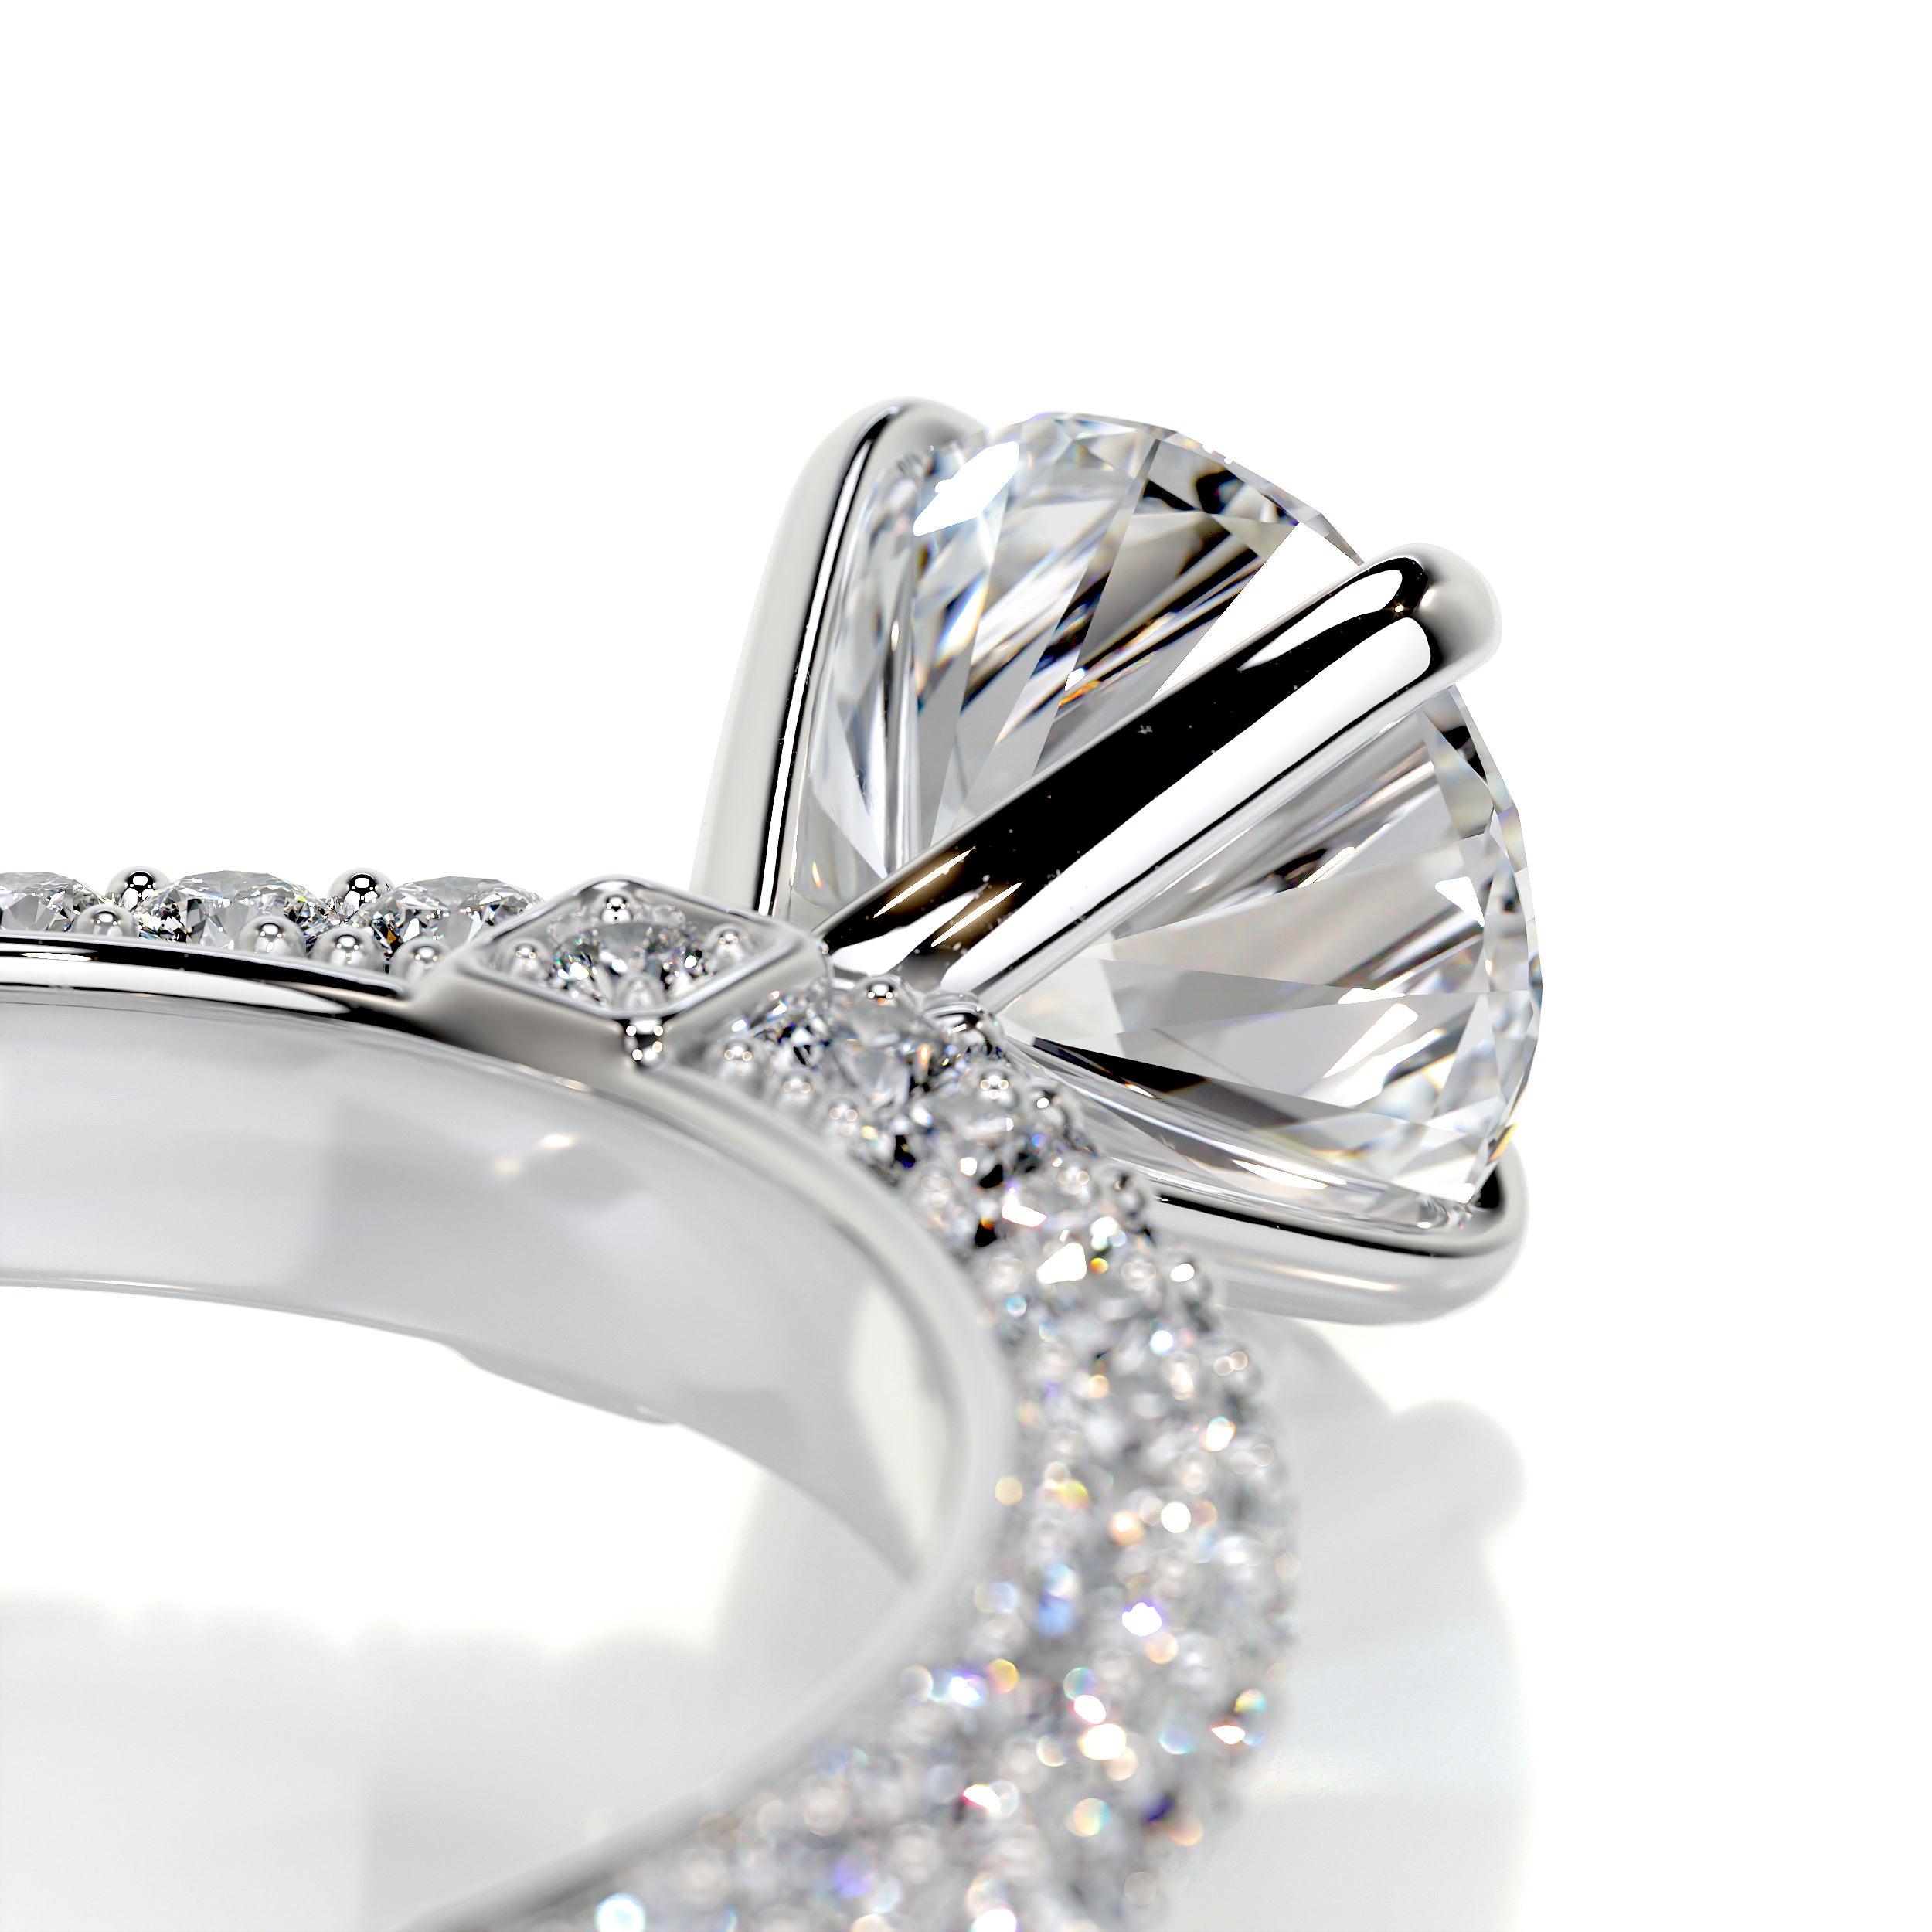 Lillian Diamond Engagement Ring -14K White Gold